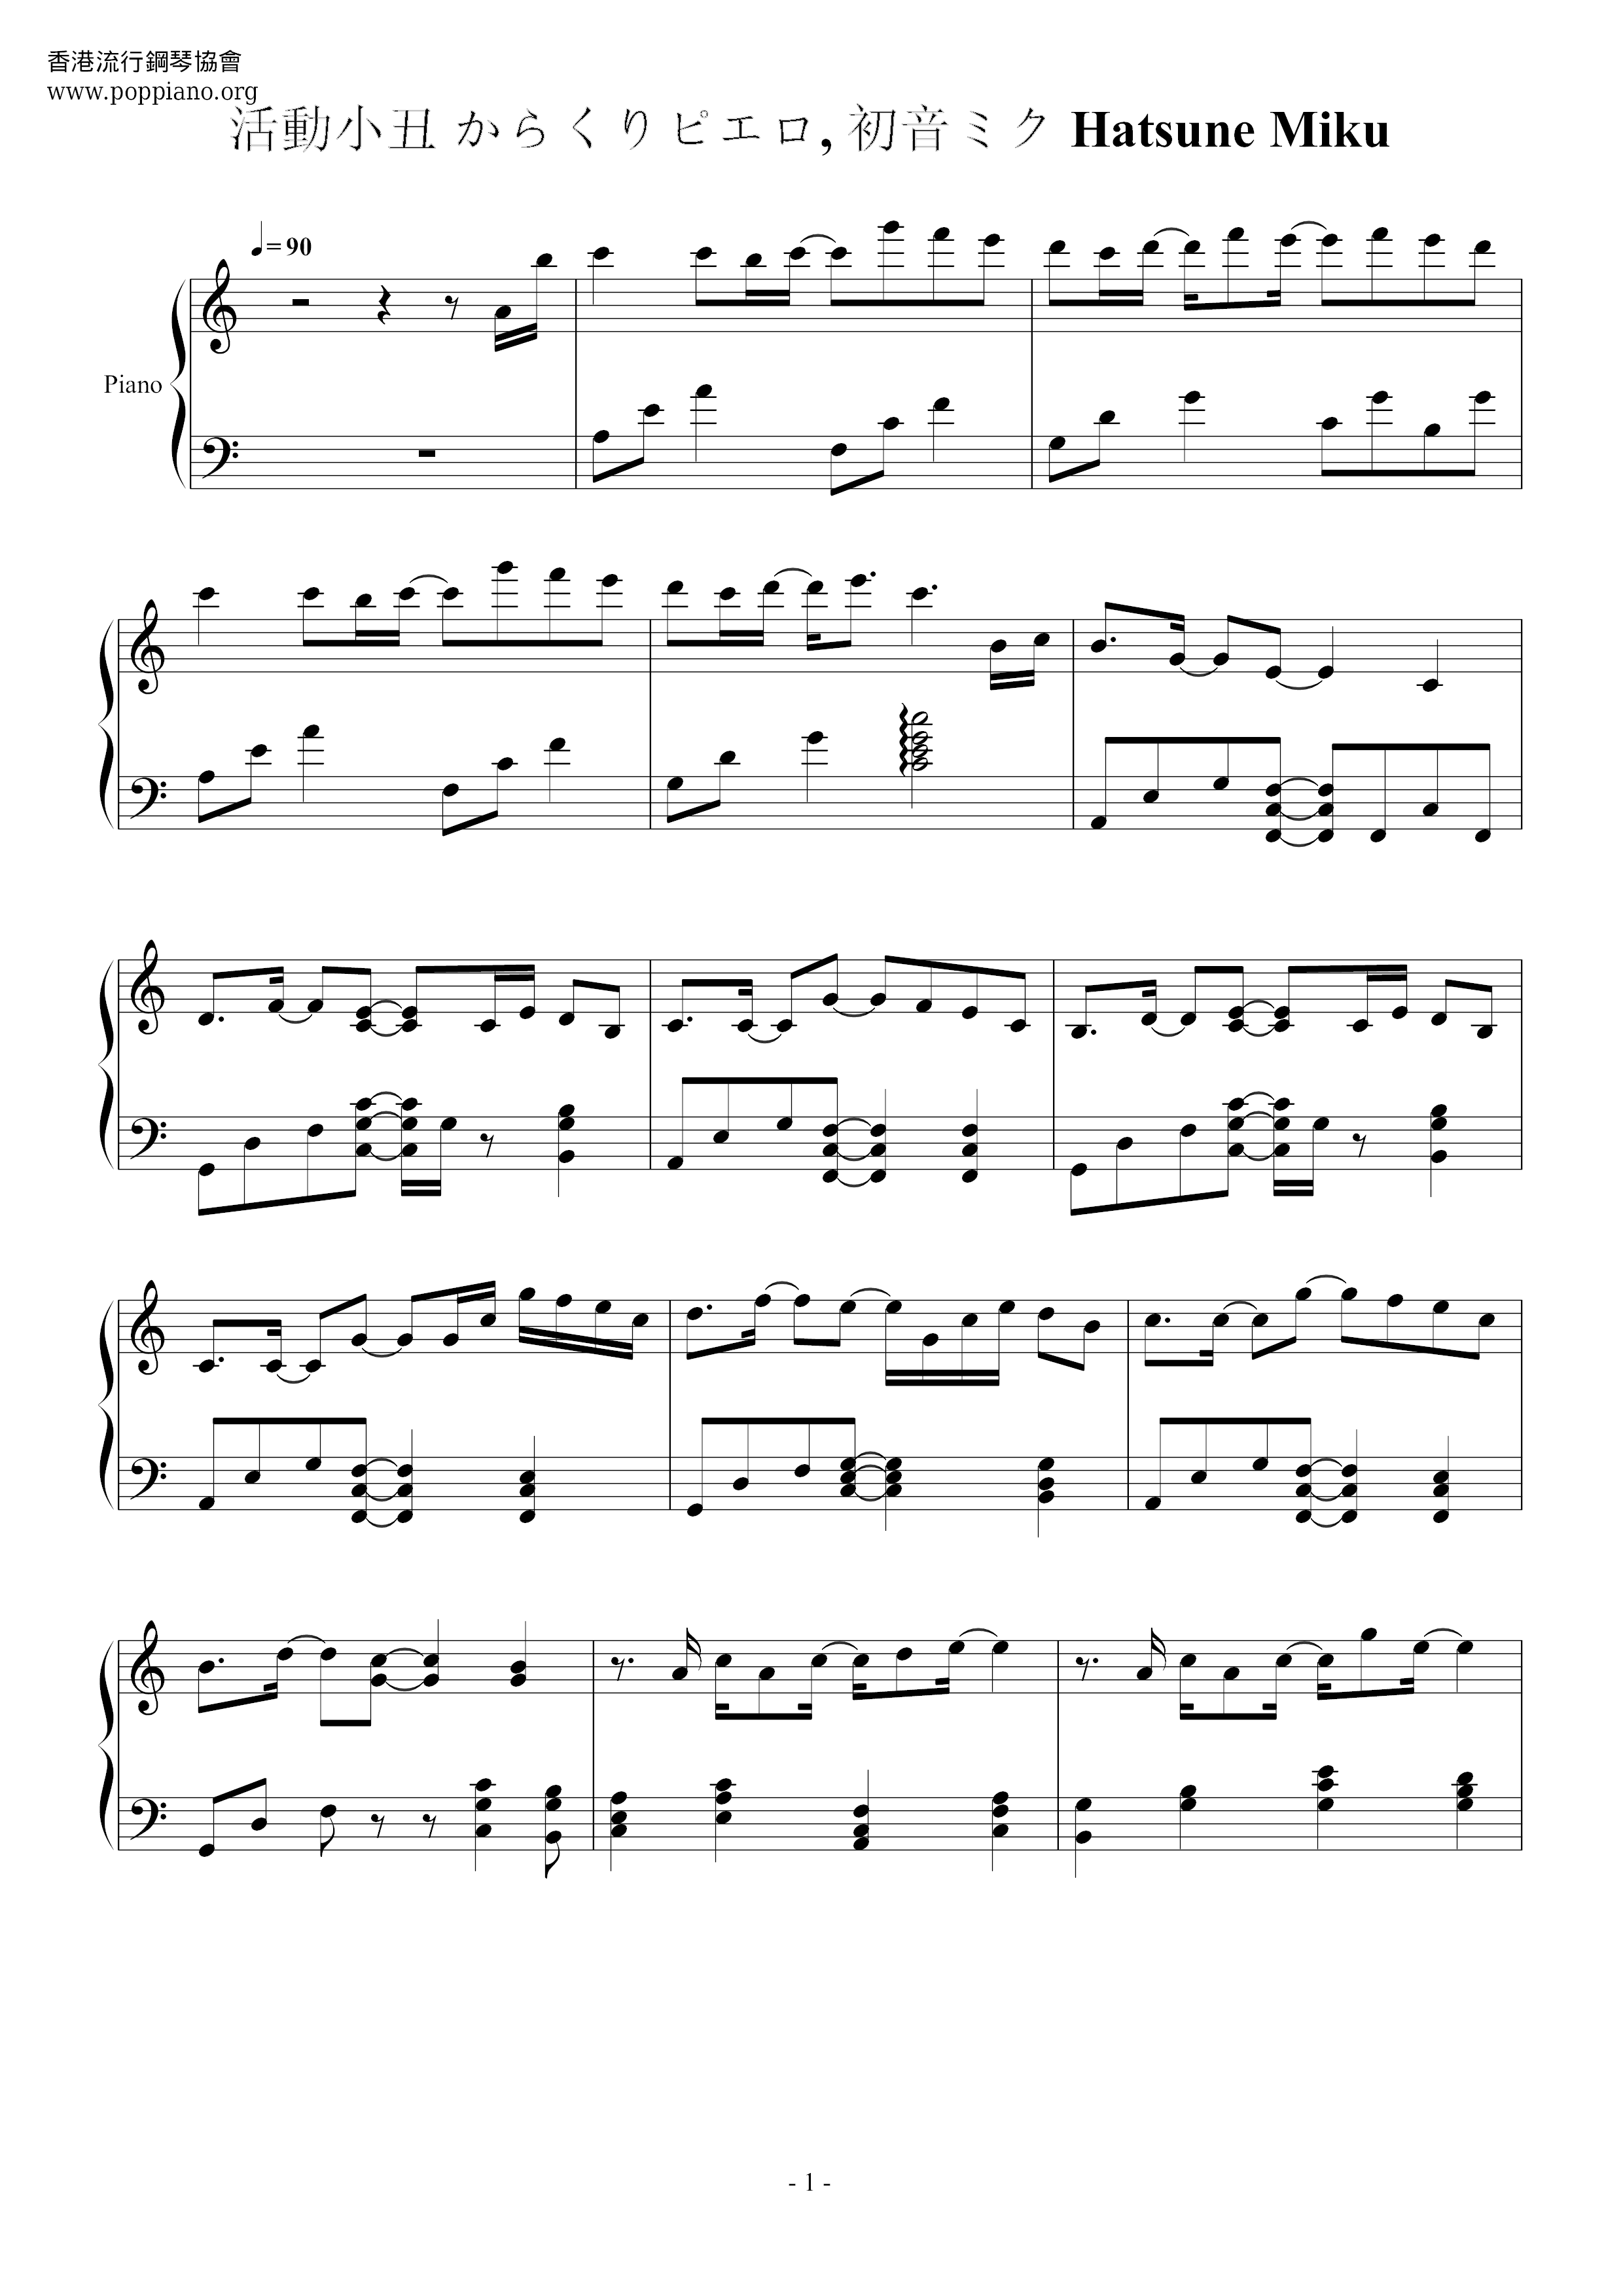 Karakuri Pierrot Score